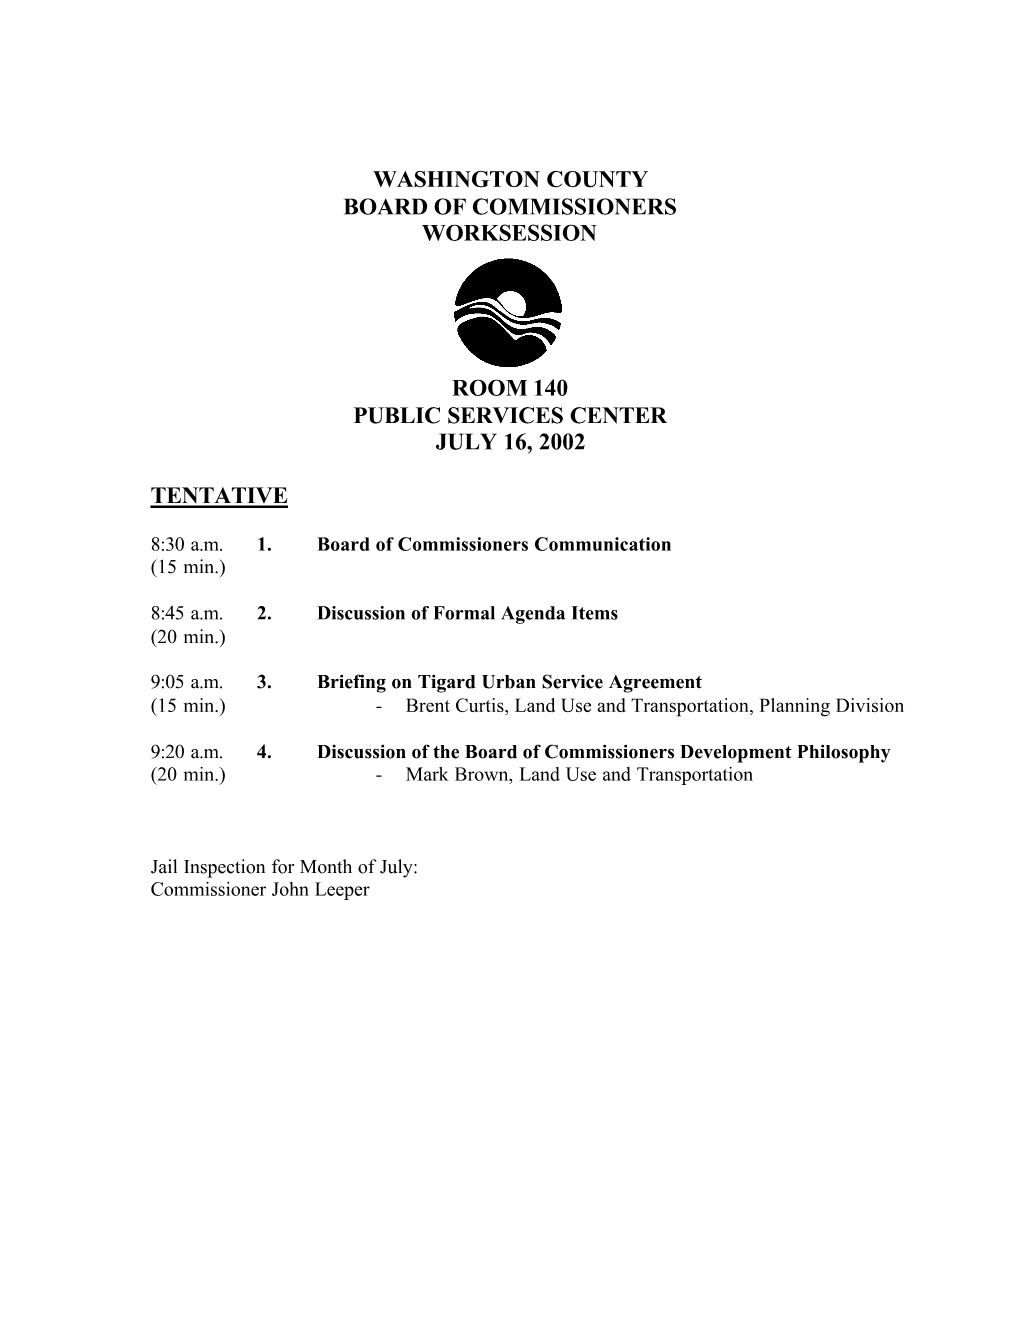 BOC Agenda 07-16-2002